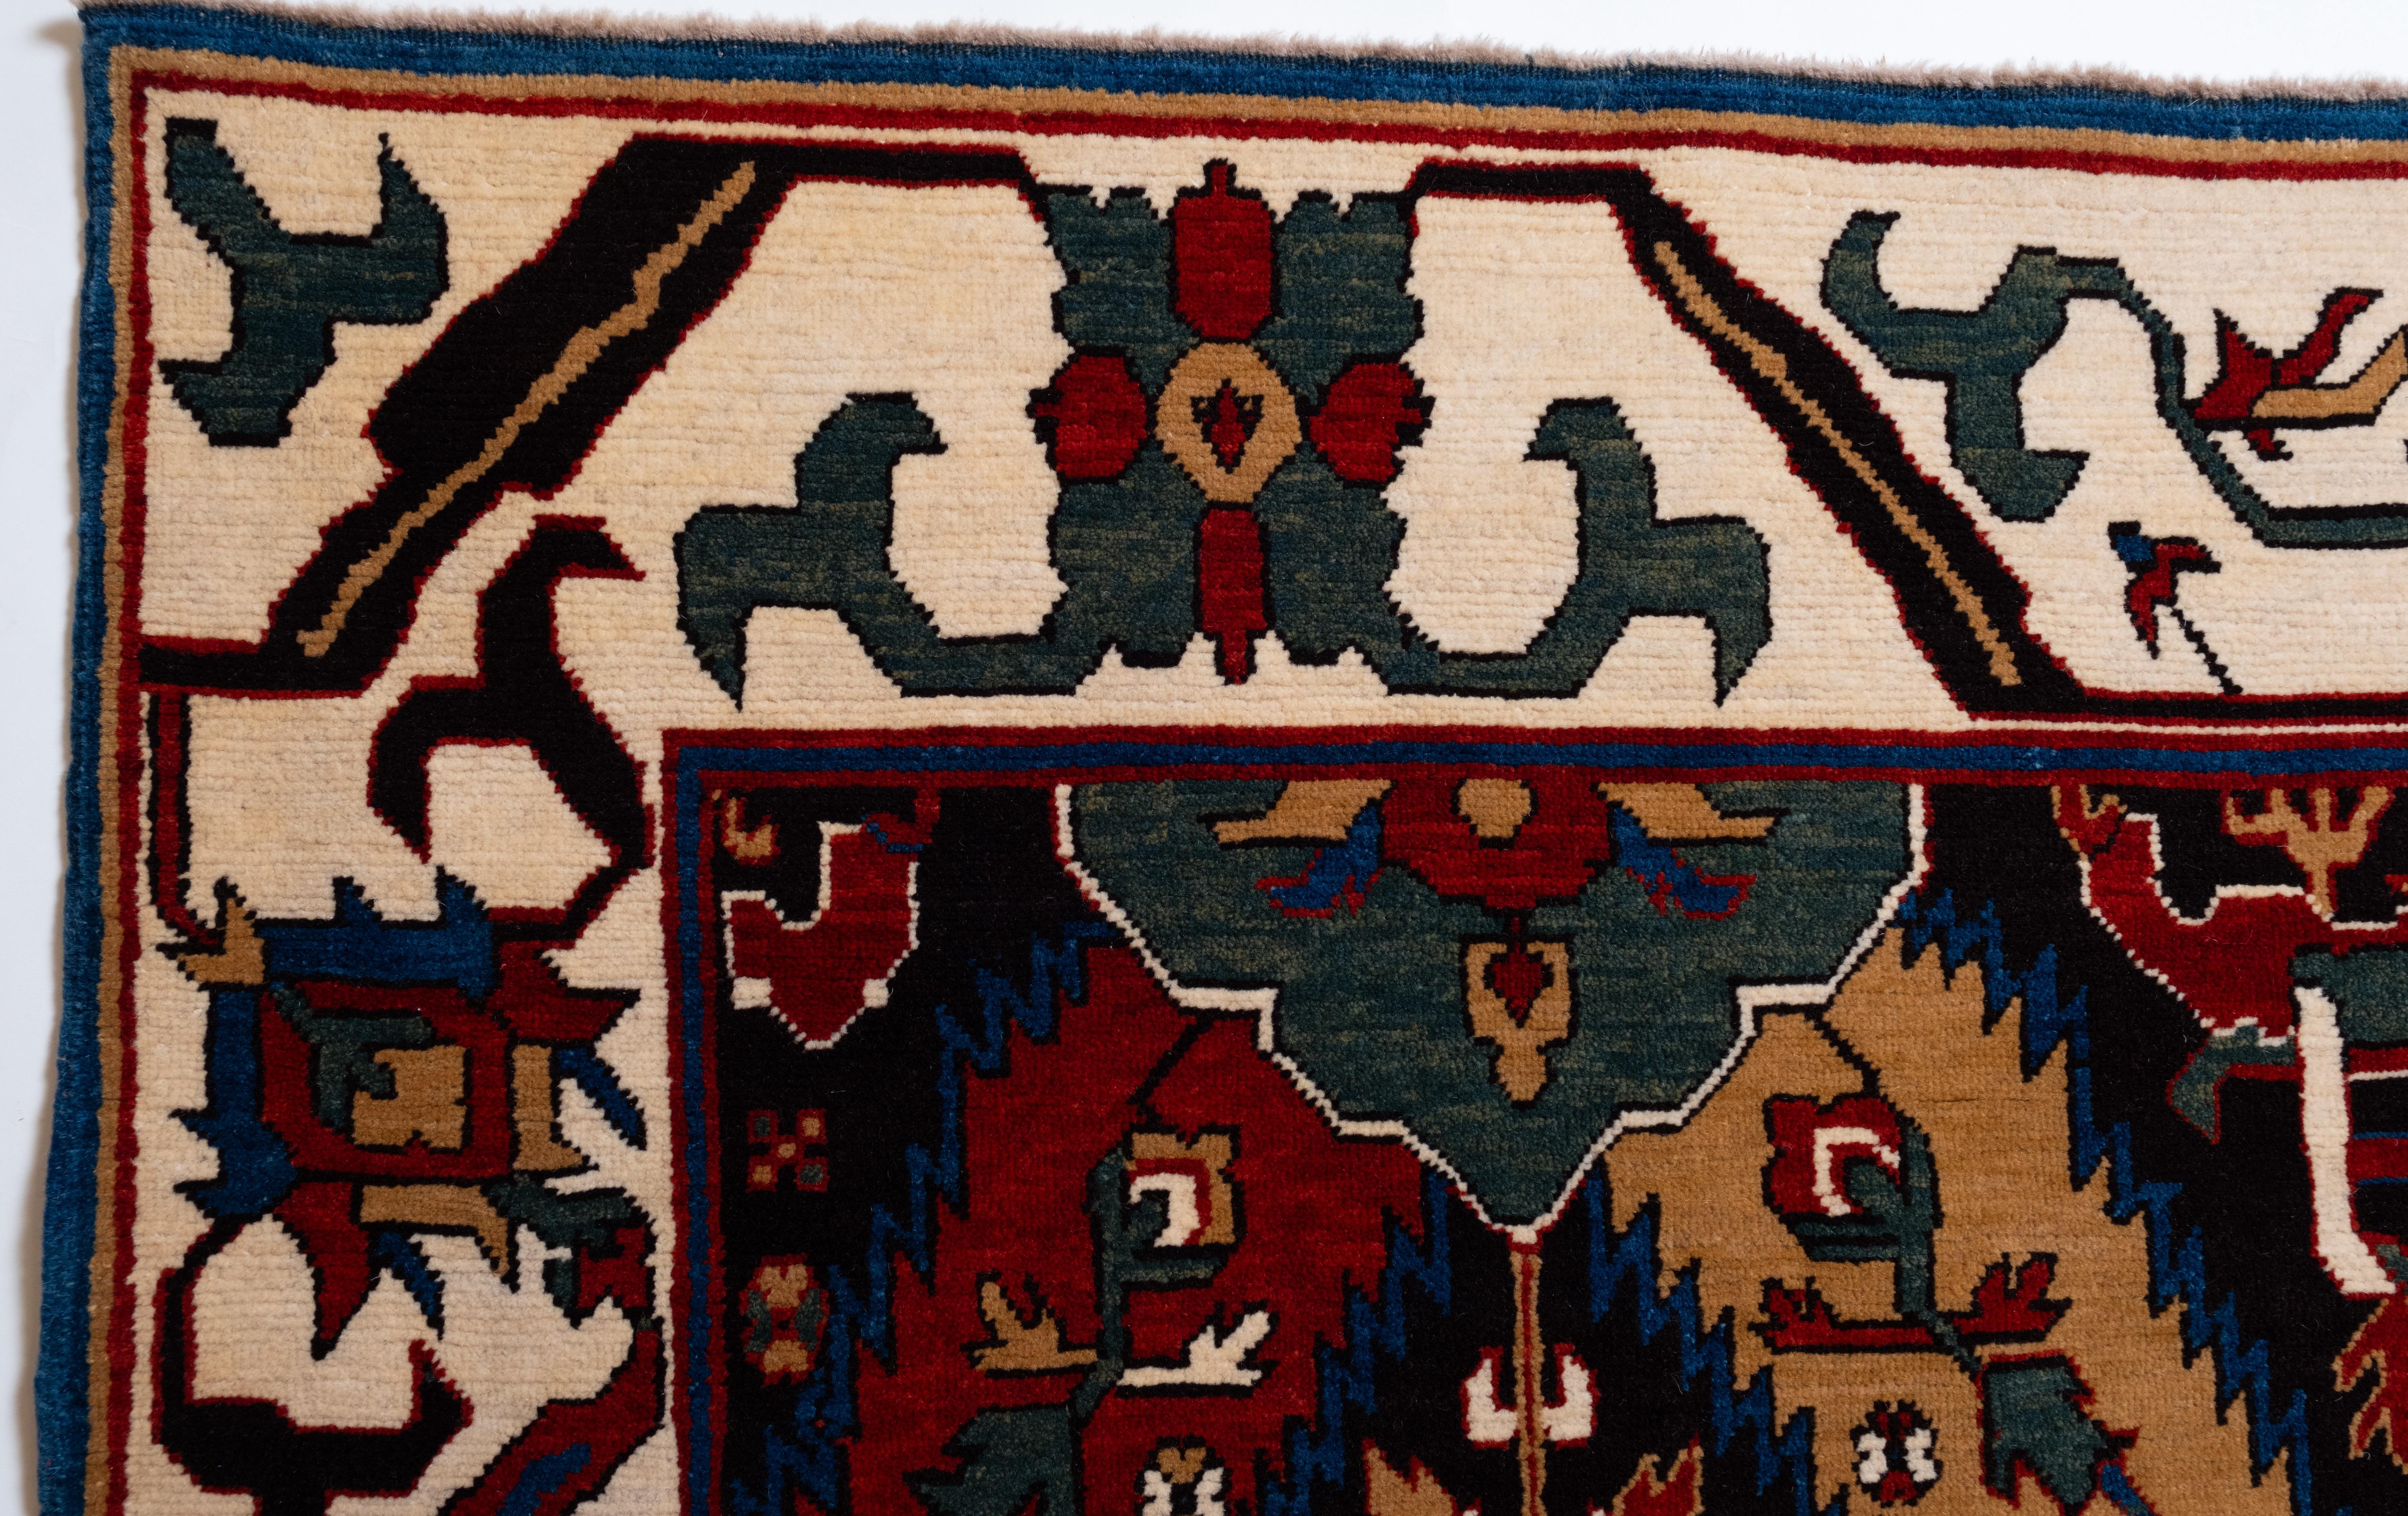 Die Quelle des Teppichs stammt aus dem Buch Caucasian Carpets, E. Gans-Reudin, Thames and Hudson, Schweiz 1986, S. 37. Dieses luxuriöse und vielseitige Werk ist nach dem Namen seines Vorbesitzers als ?Cassirer-Drachenteppich